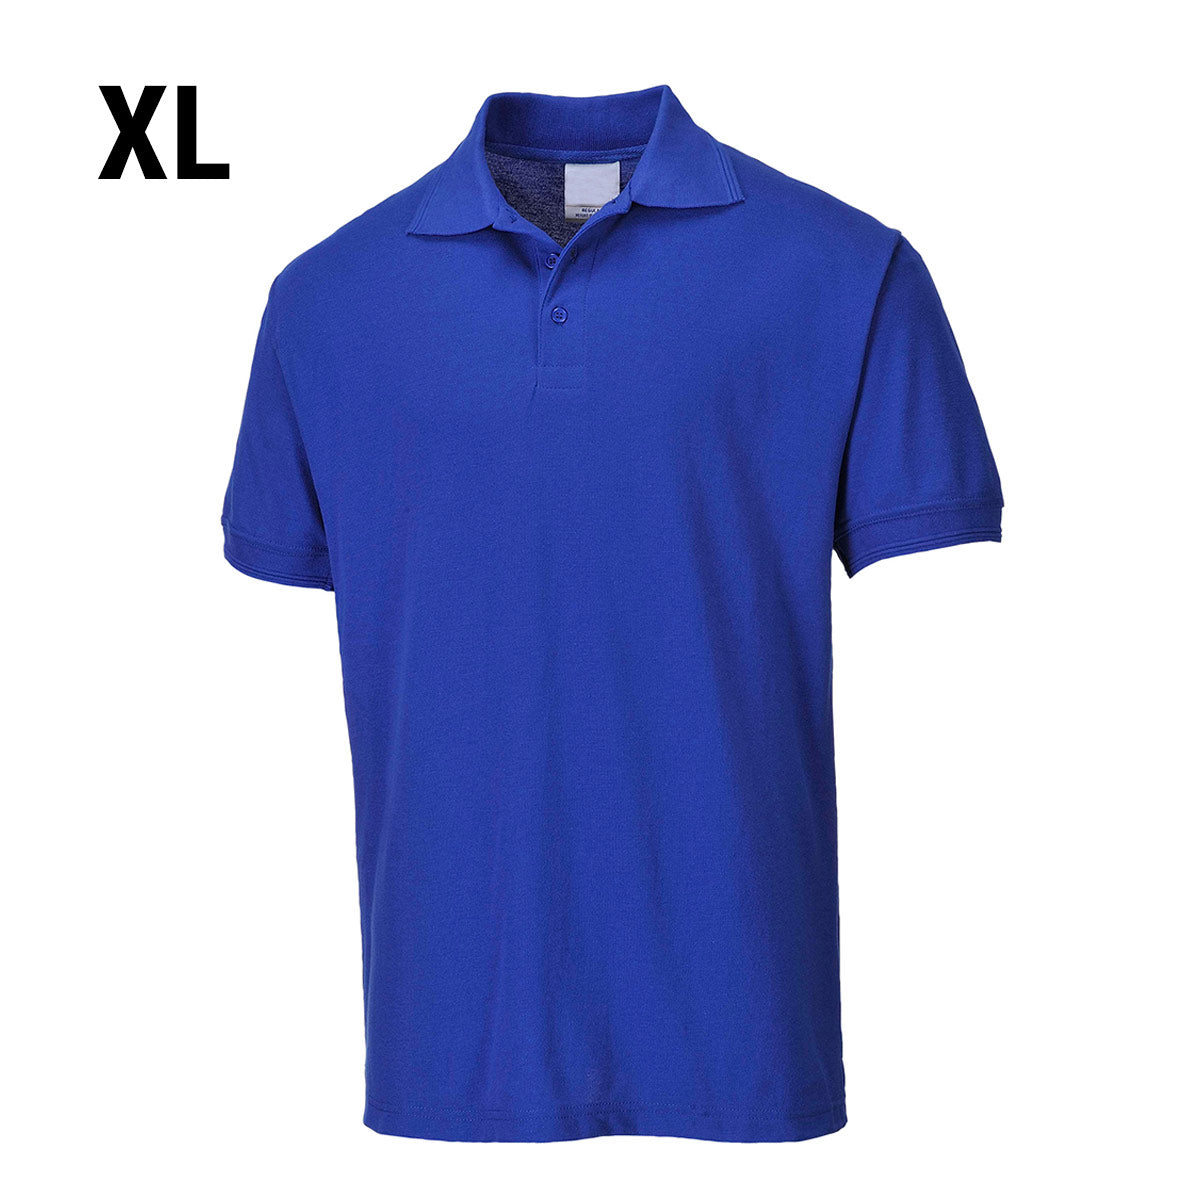 Poloskjorte for menn - kongeblå - størrelse: XL